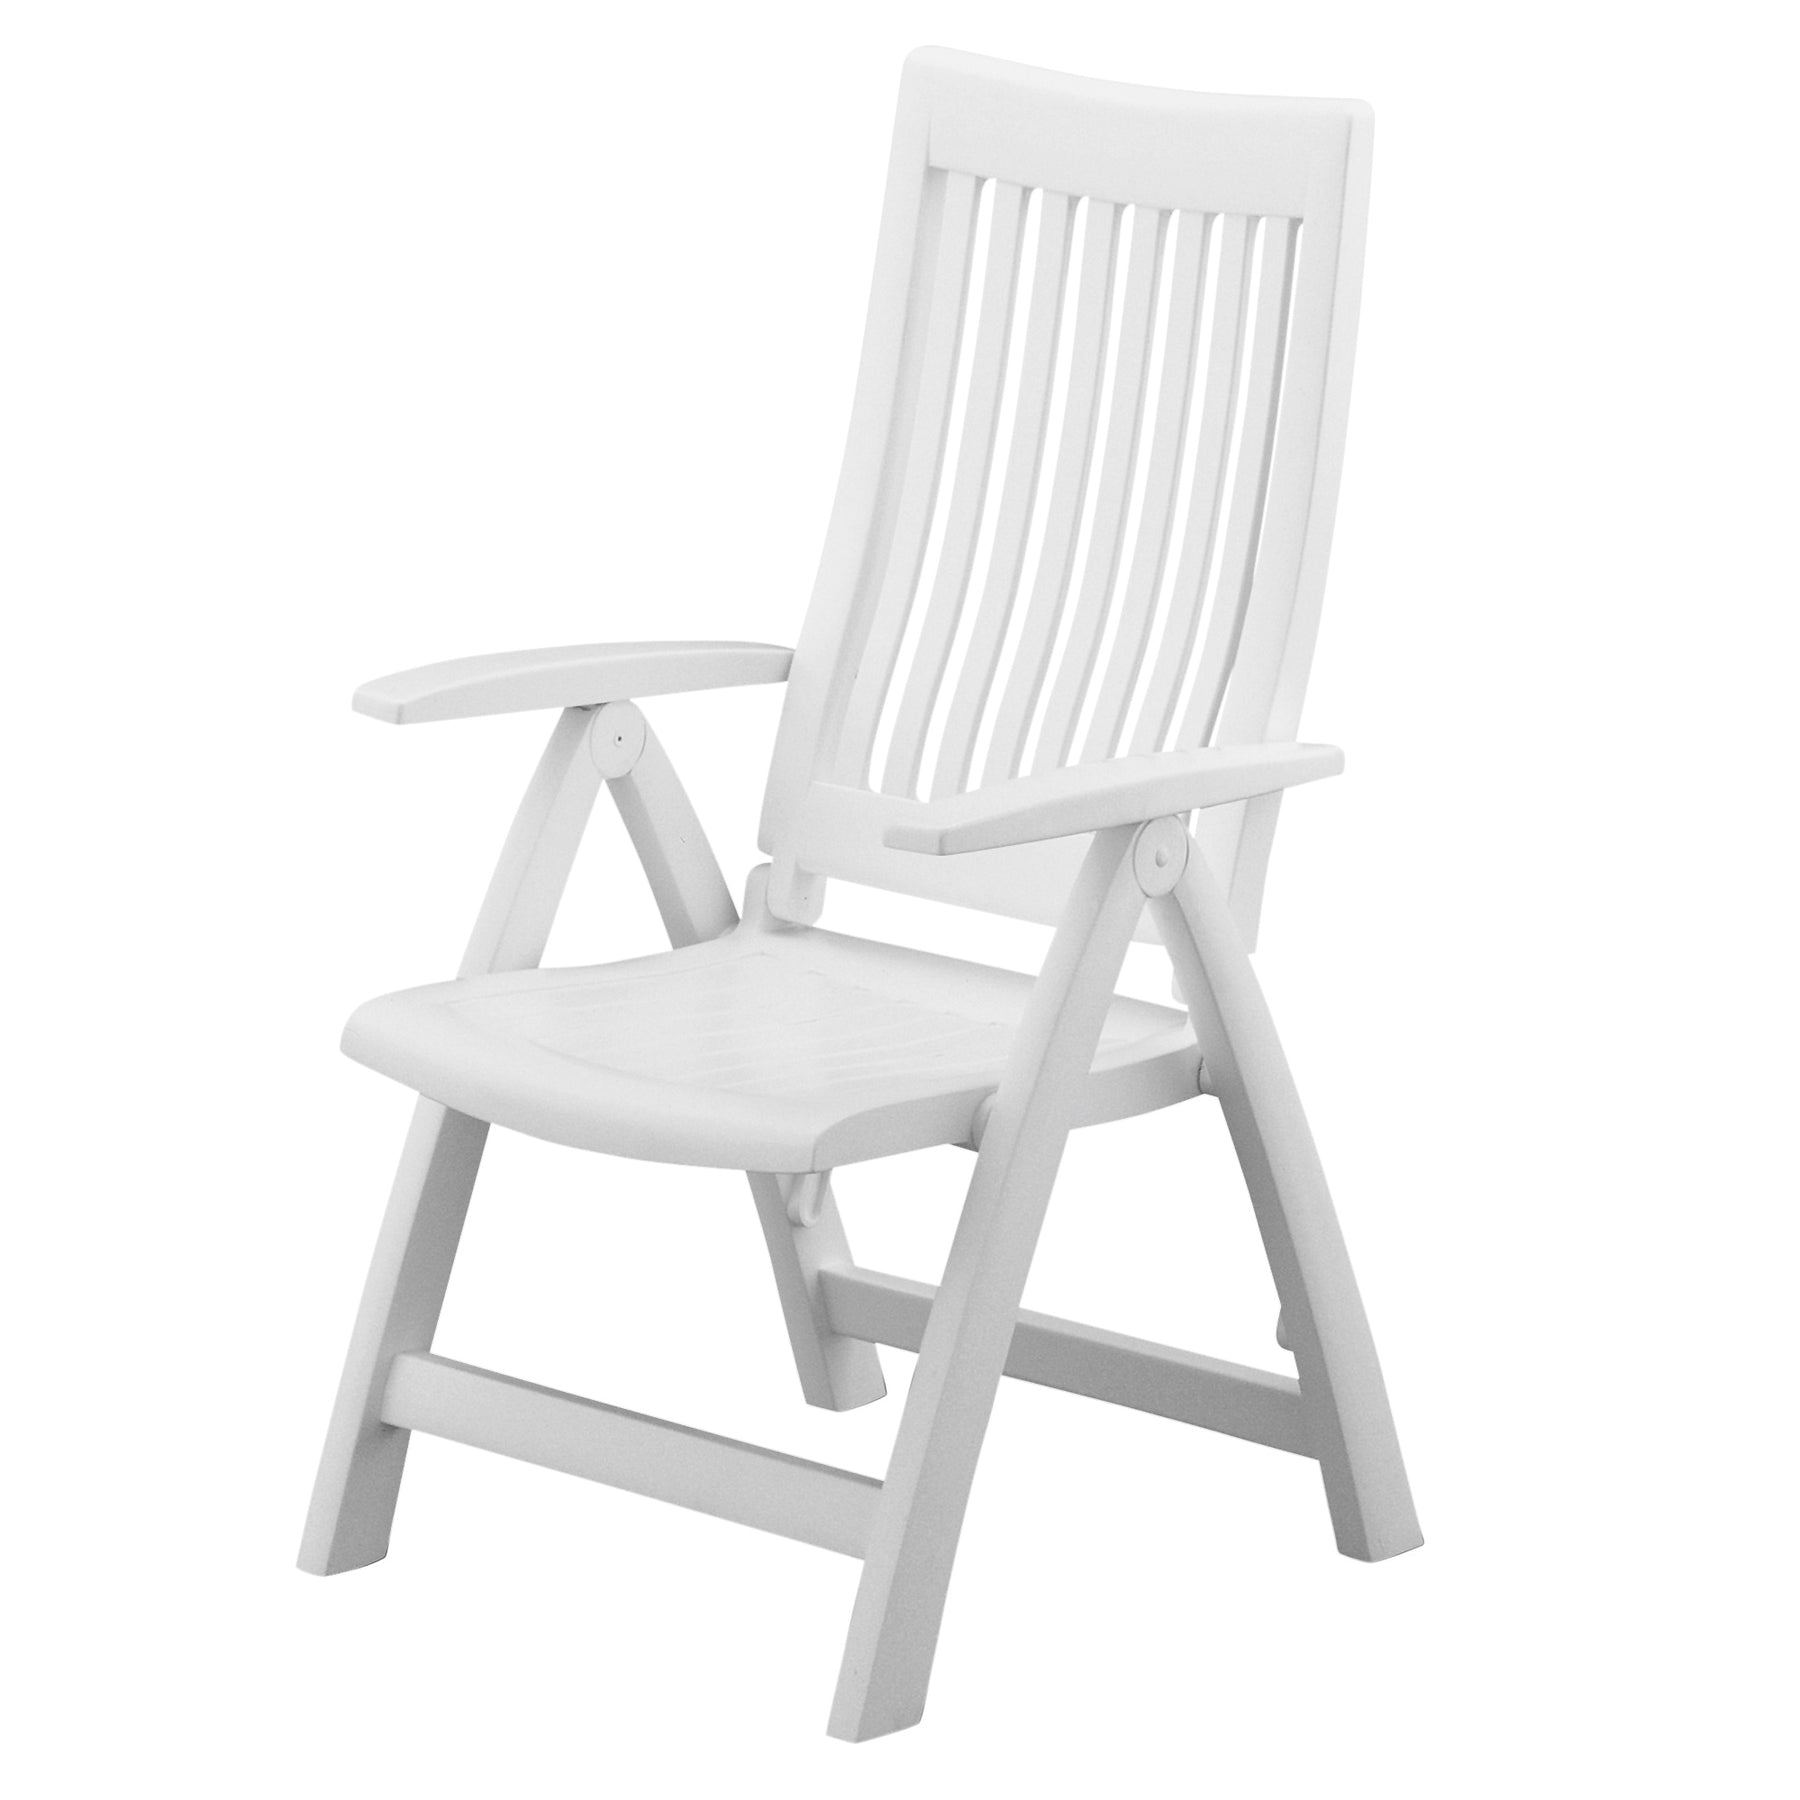 Kettler Roma Multi-Position Chair, White